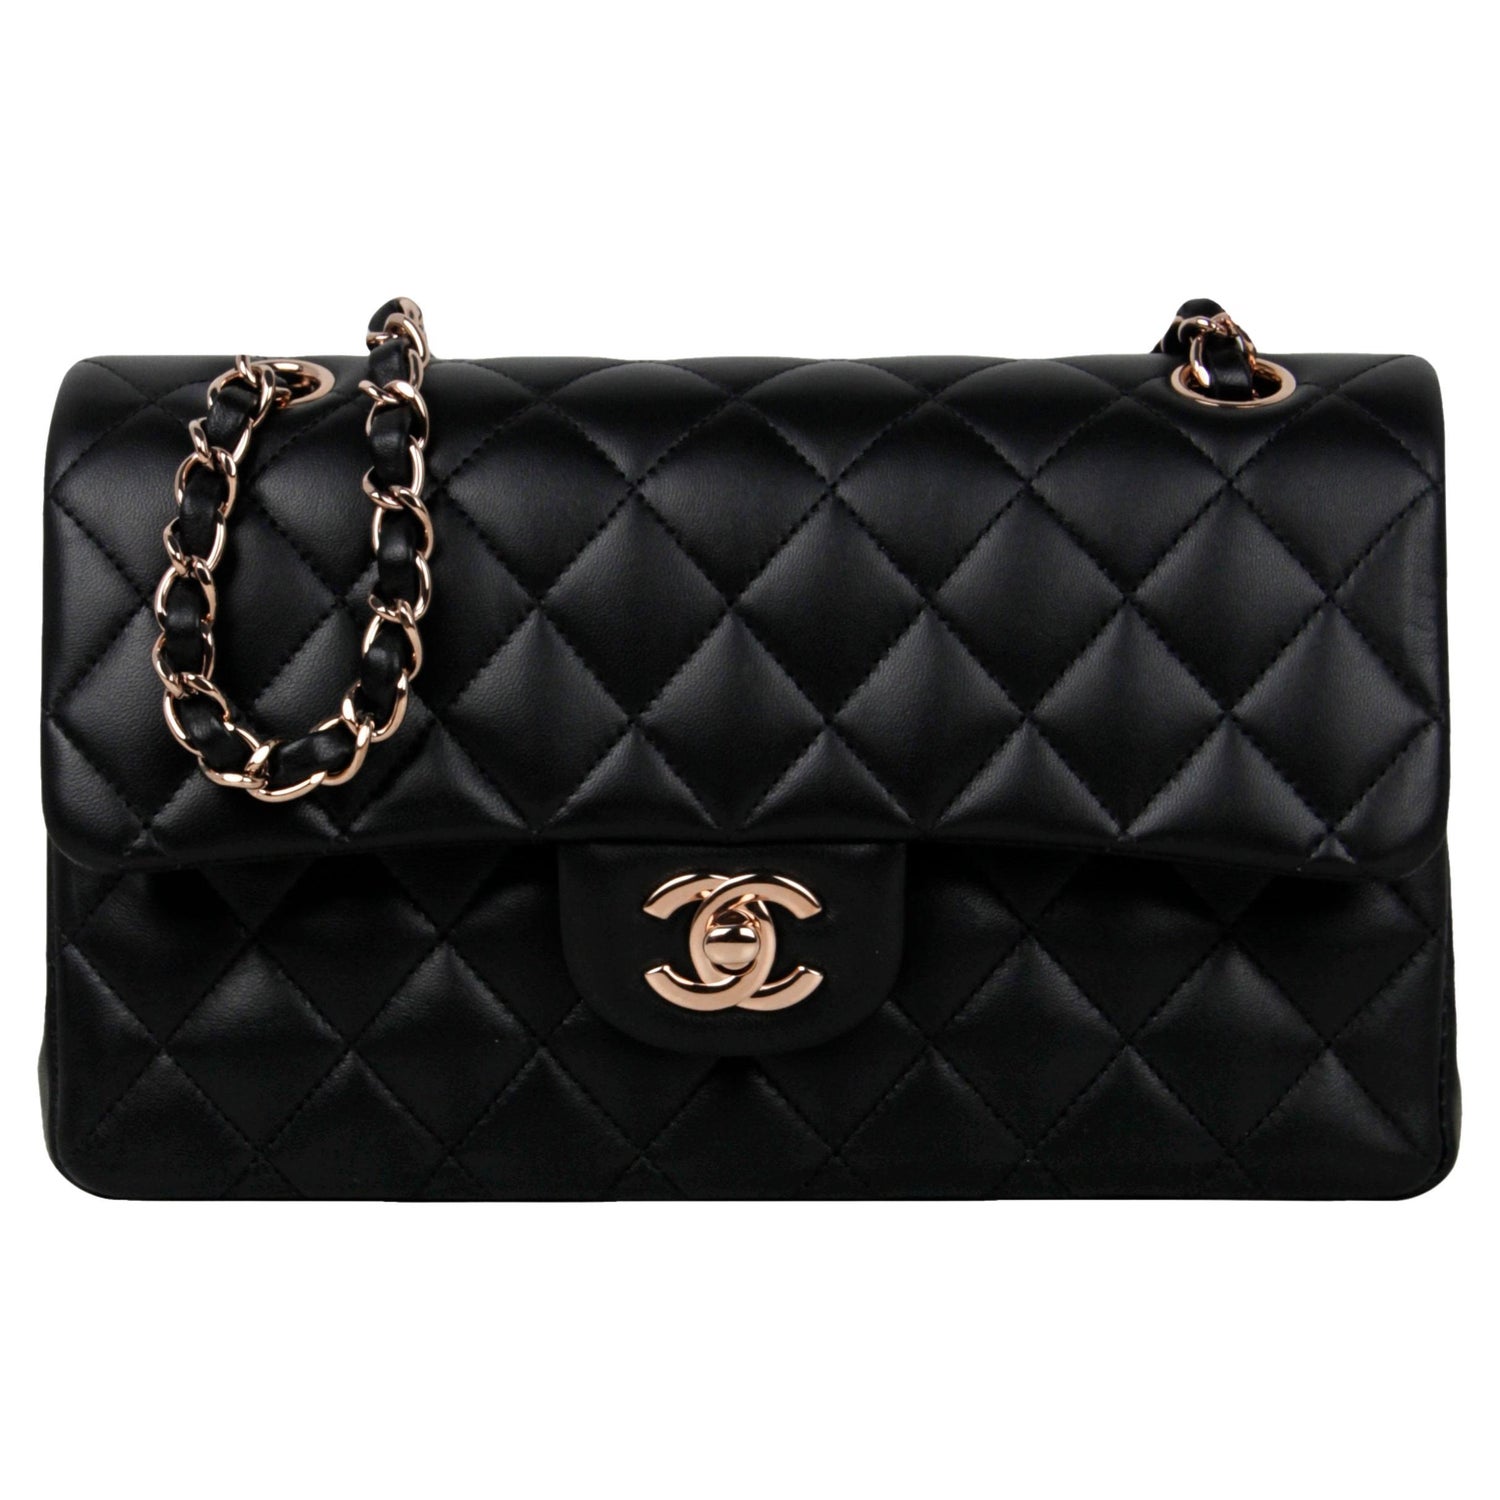 $6900 AUTH 15A Chanel Limited Edition Lizard Skin Black Boy Bag Sz Small